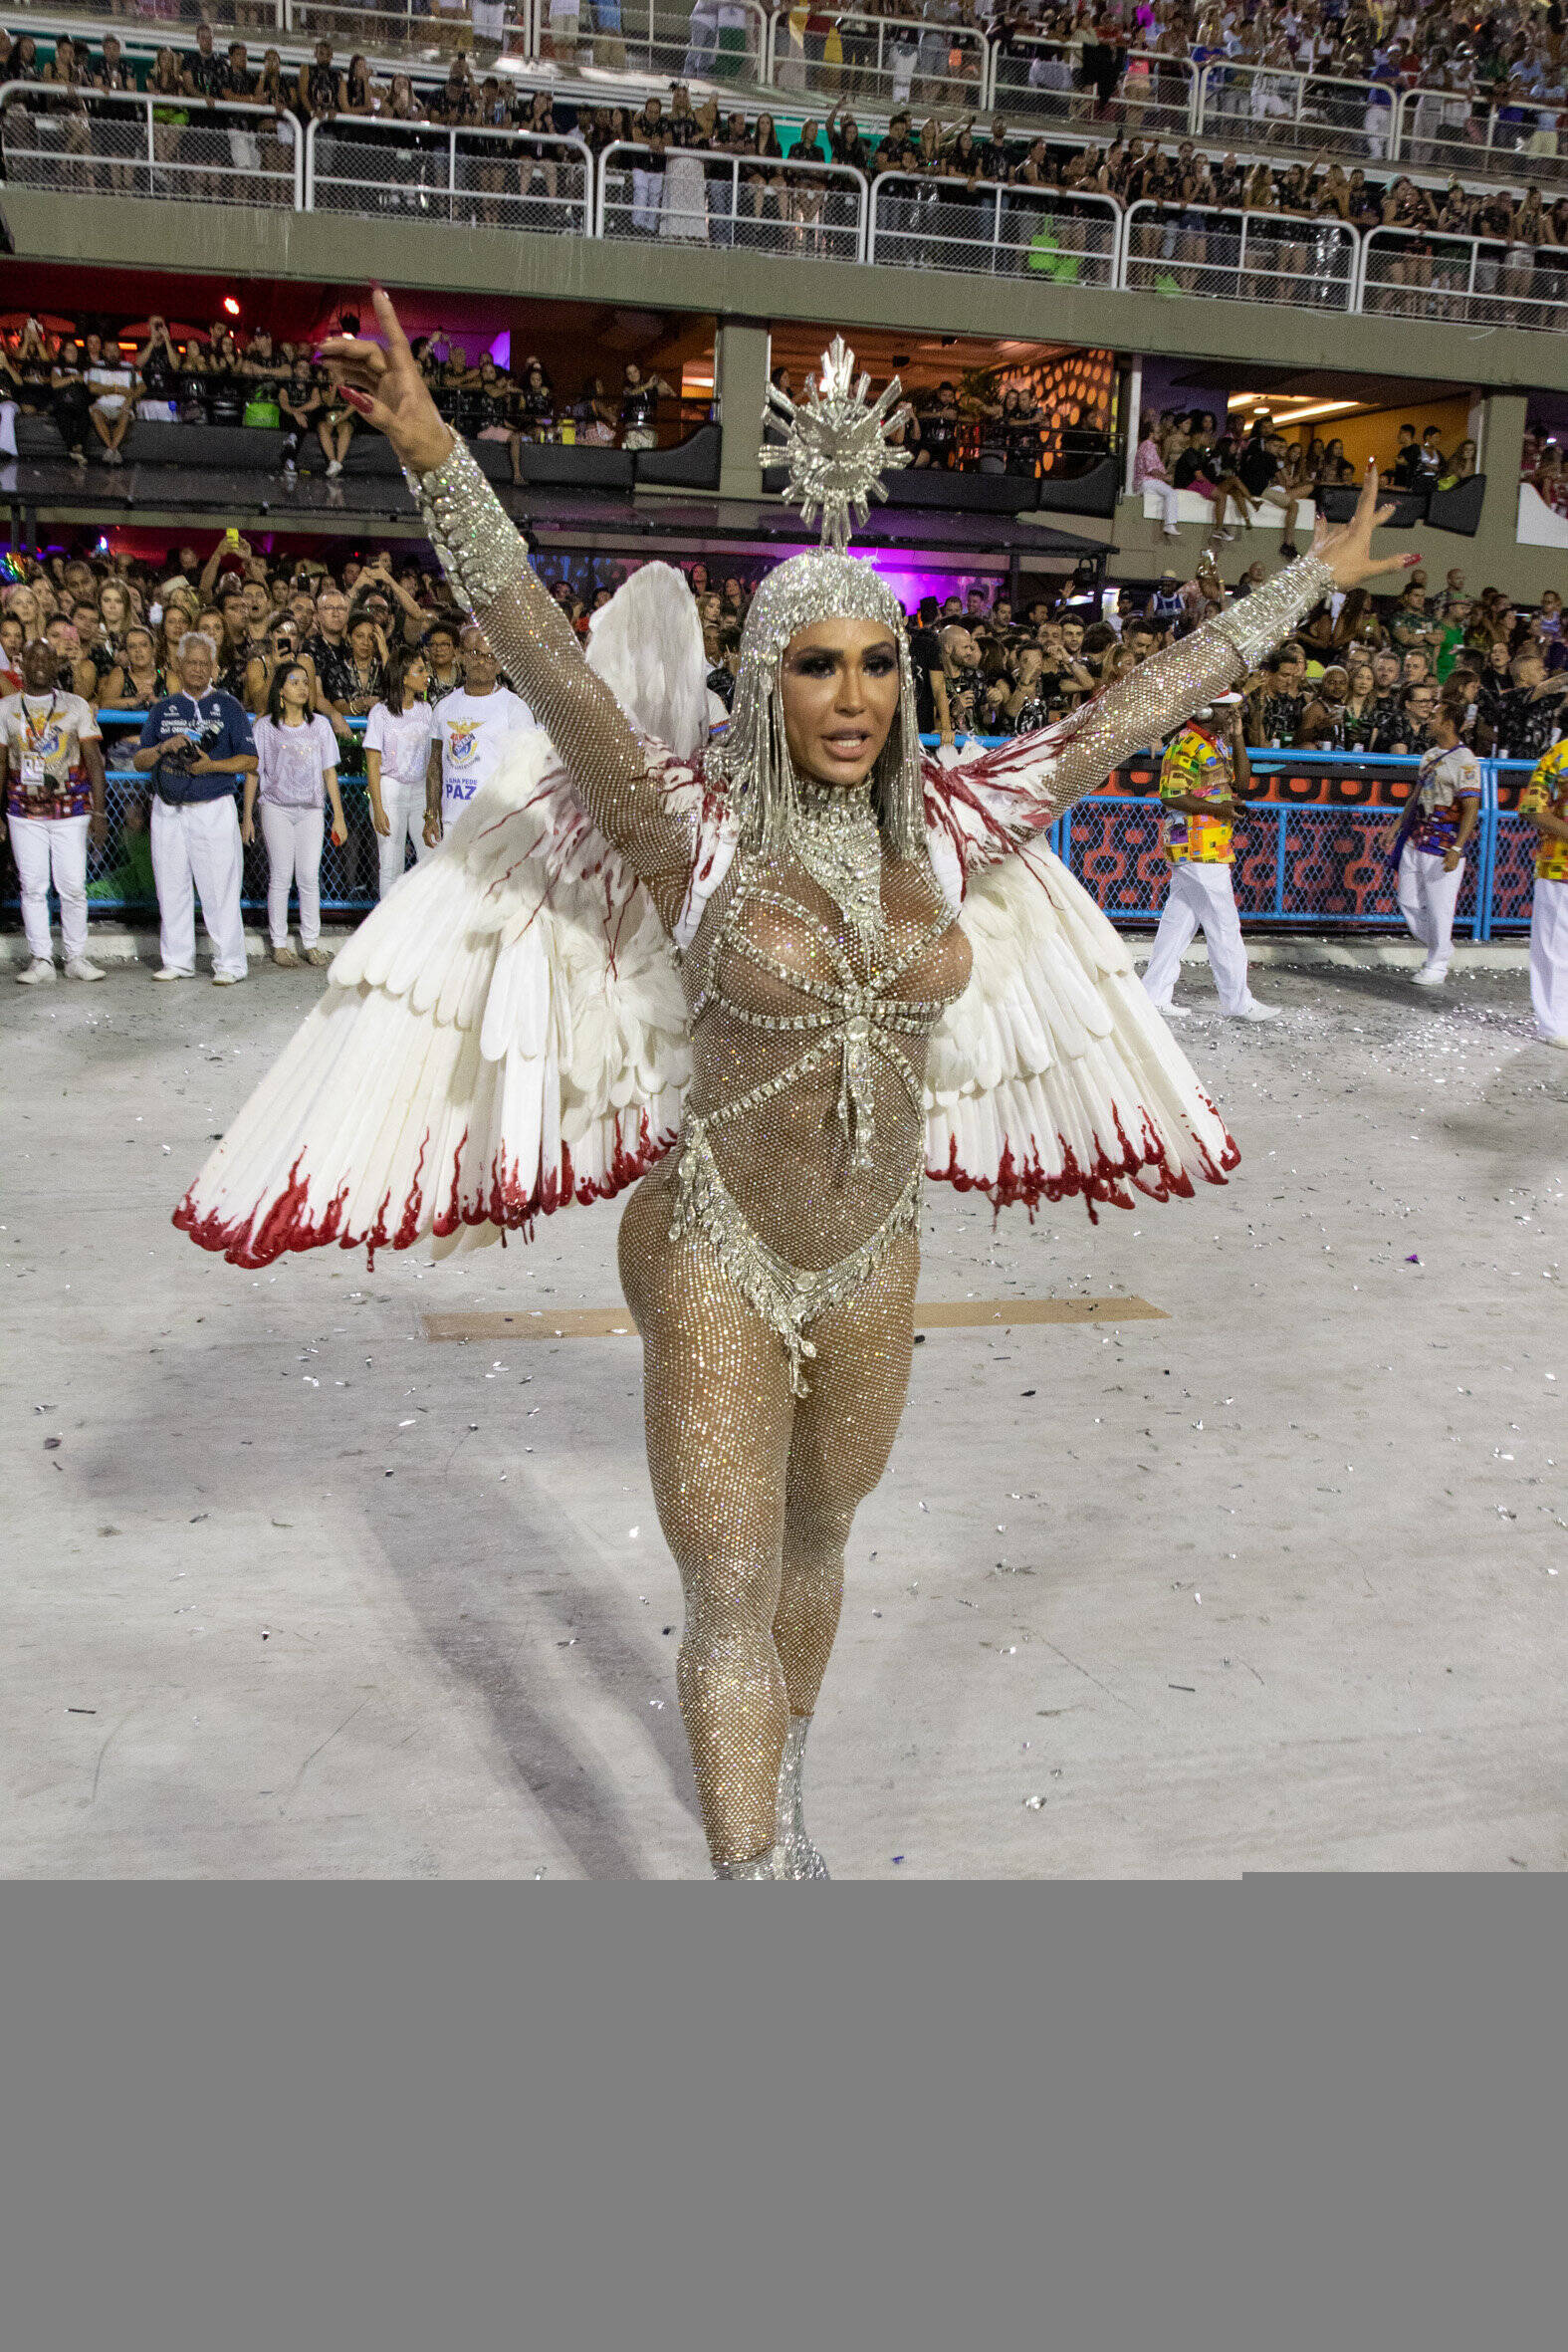 Rainhas de bateria agitam primeira noite de desfiles no Rio. Foto: Agência O Globo